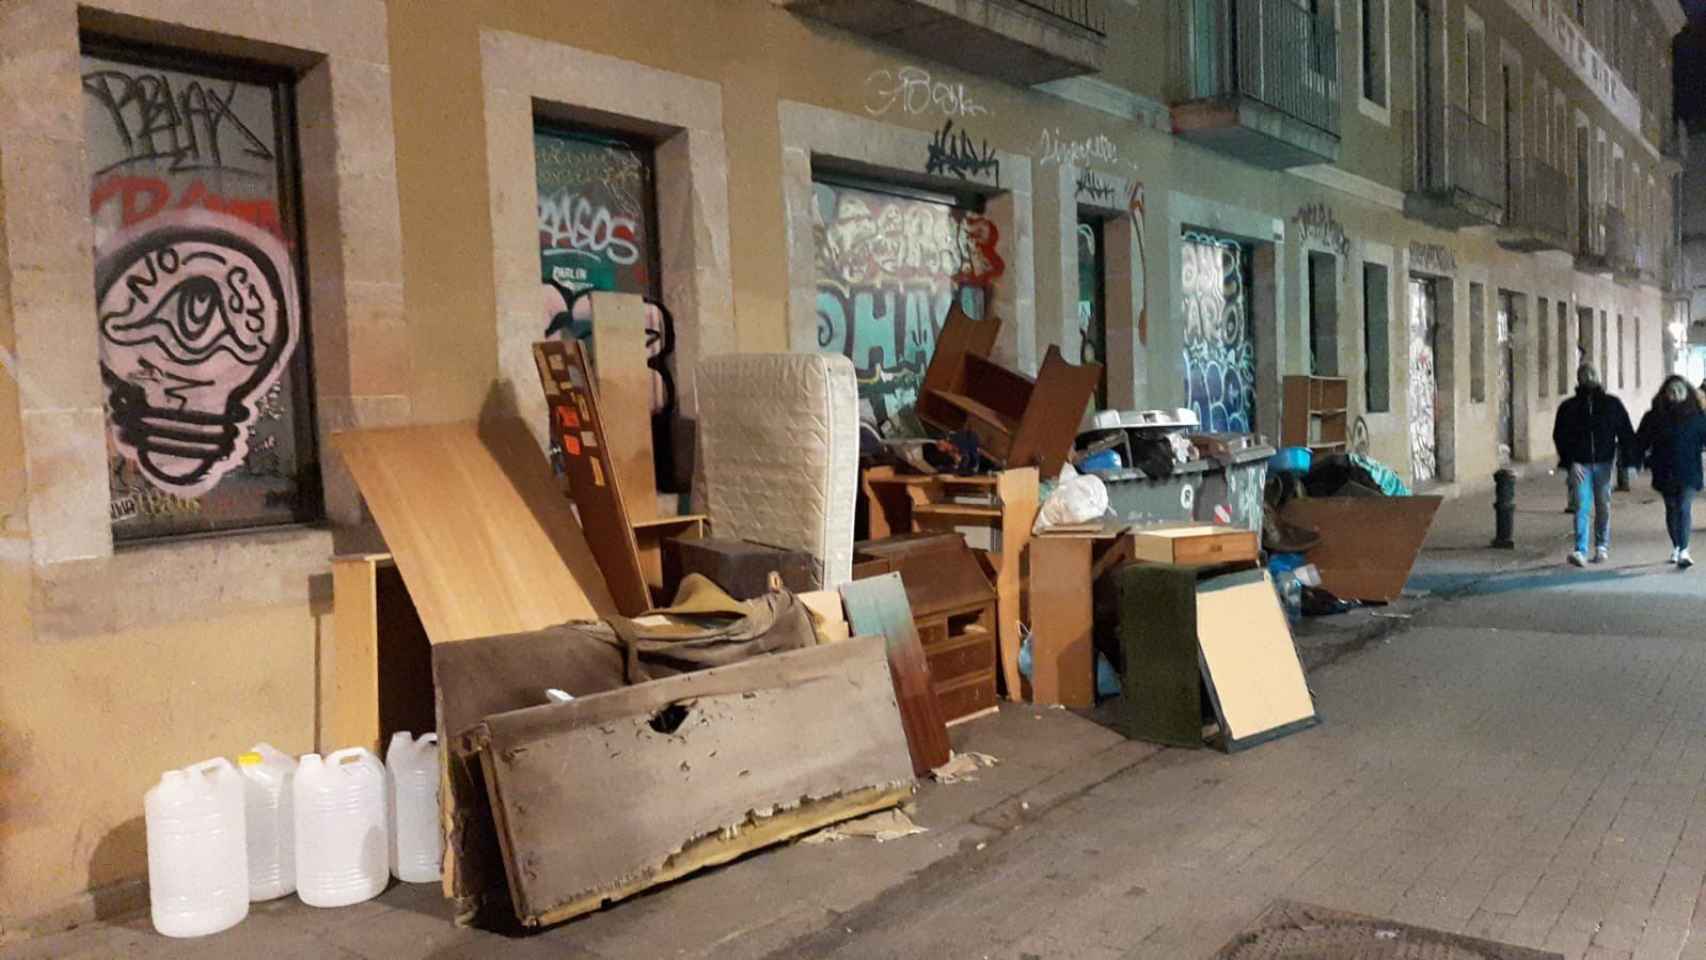 Muebles viejos depositados en medio de la calle